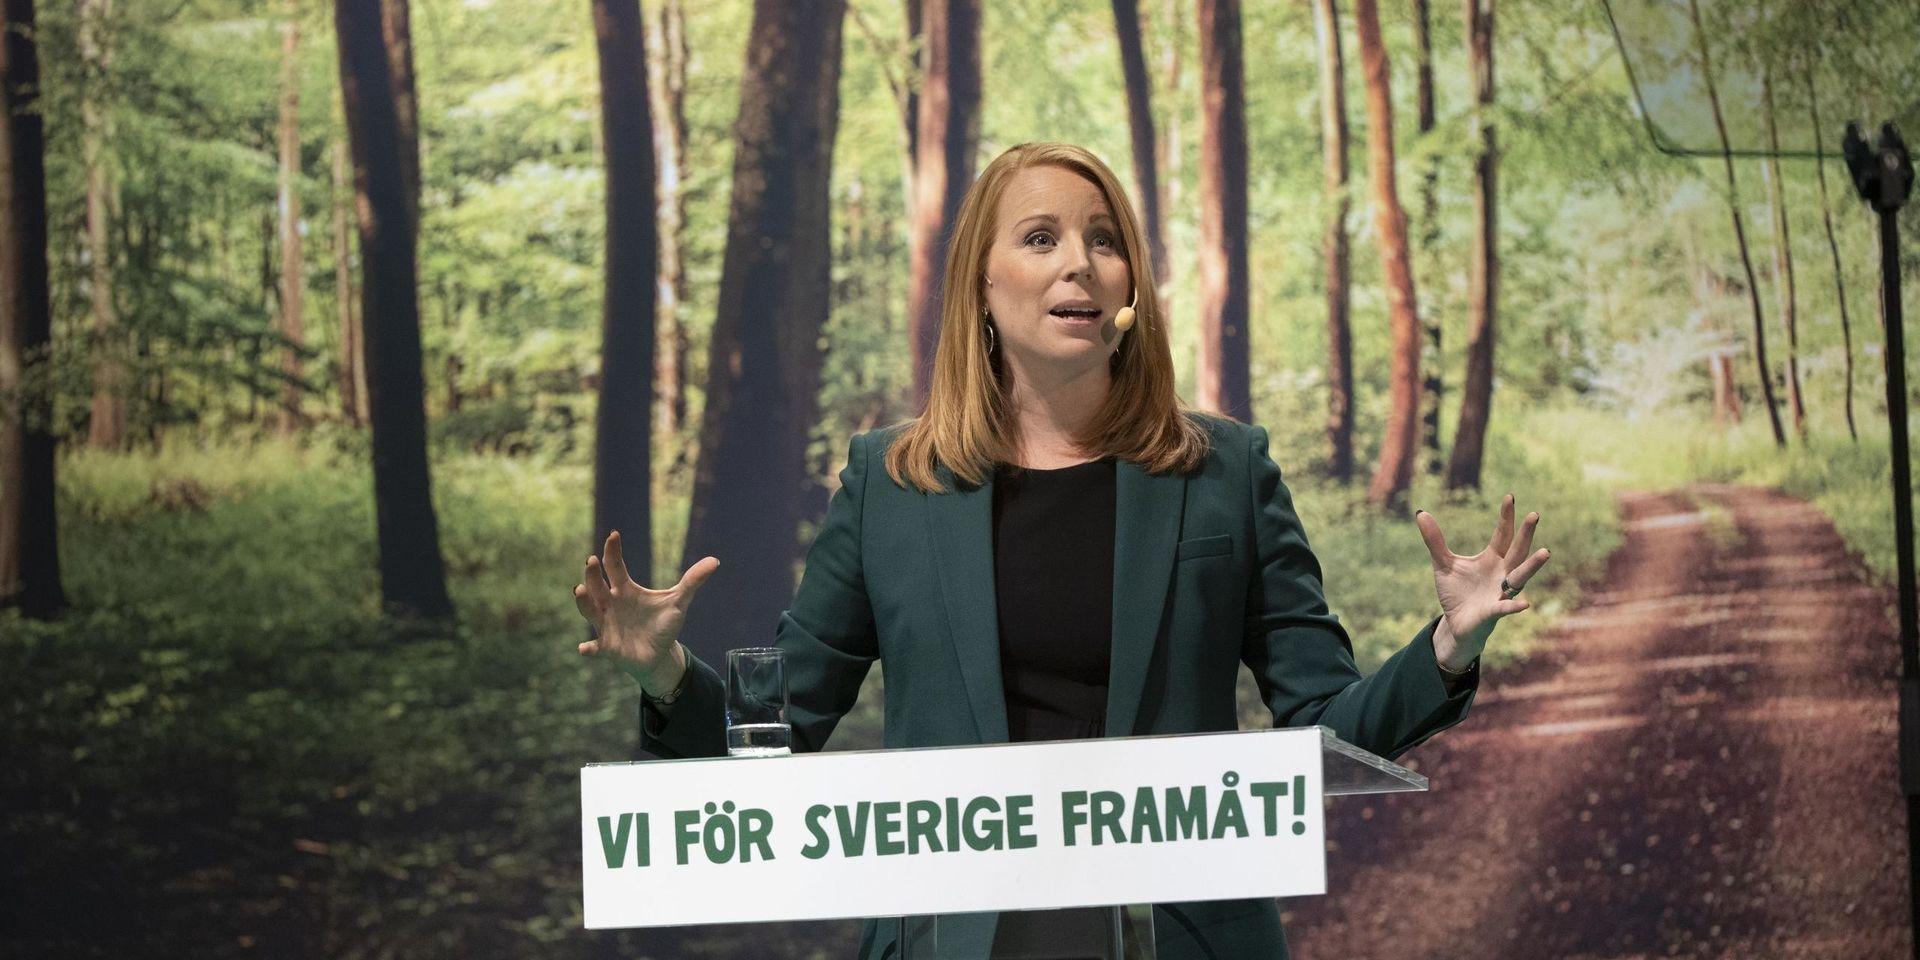 KARLSTAD 20190926
Centerpartiets partiledare Annie Lööf talar under partiets stämma på CCC i Karlstad.
Foto Tommy Pedersen / TT kod 10650